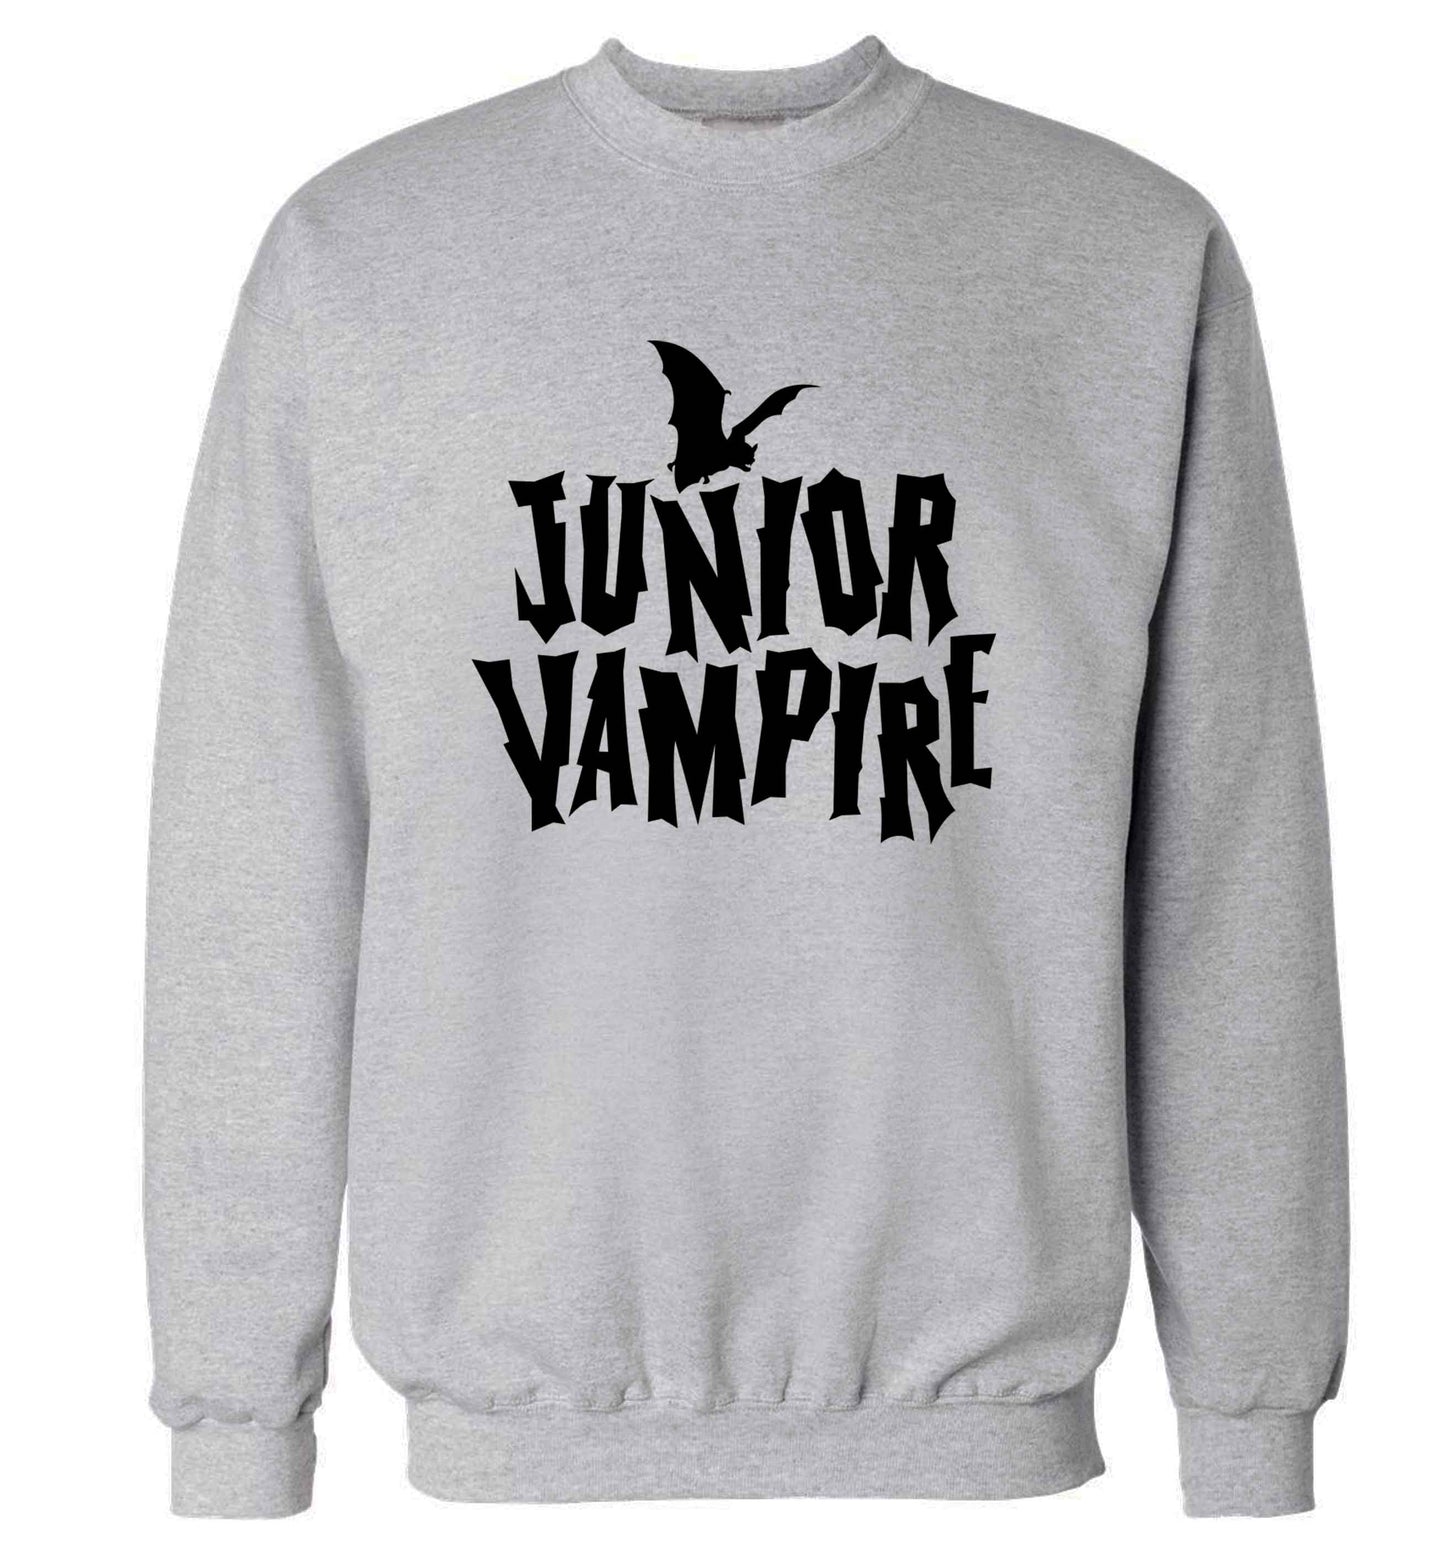 Junior vampire adult's unisex grey sweater 2XL